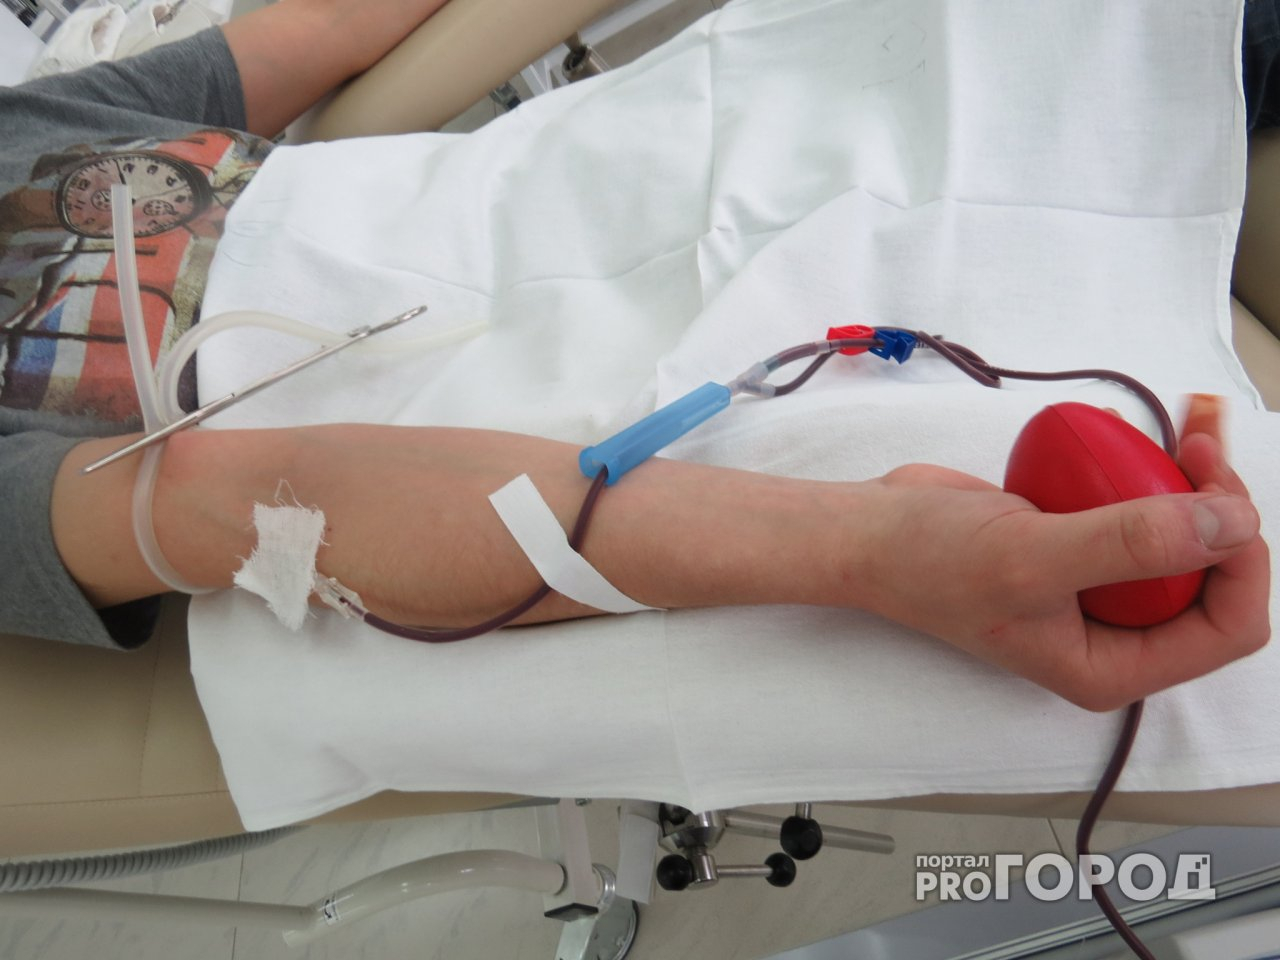 8-летняя девочка умерла в нижегородской больнице из-за халатности врачей